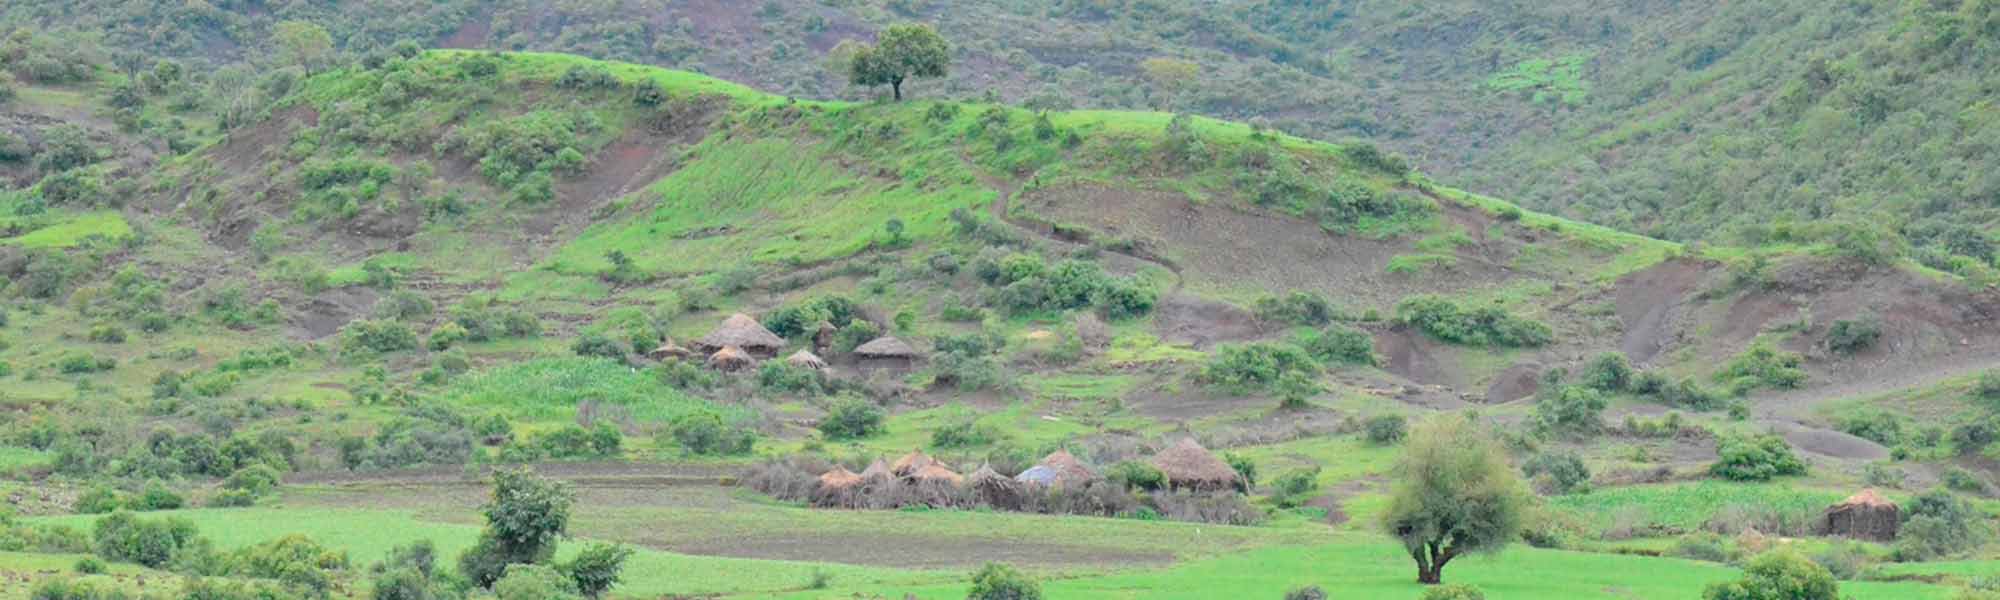 Hus i landskap åpent landskap i Etiopia